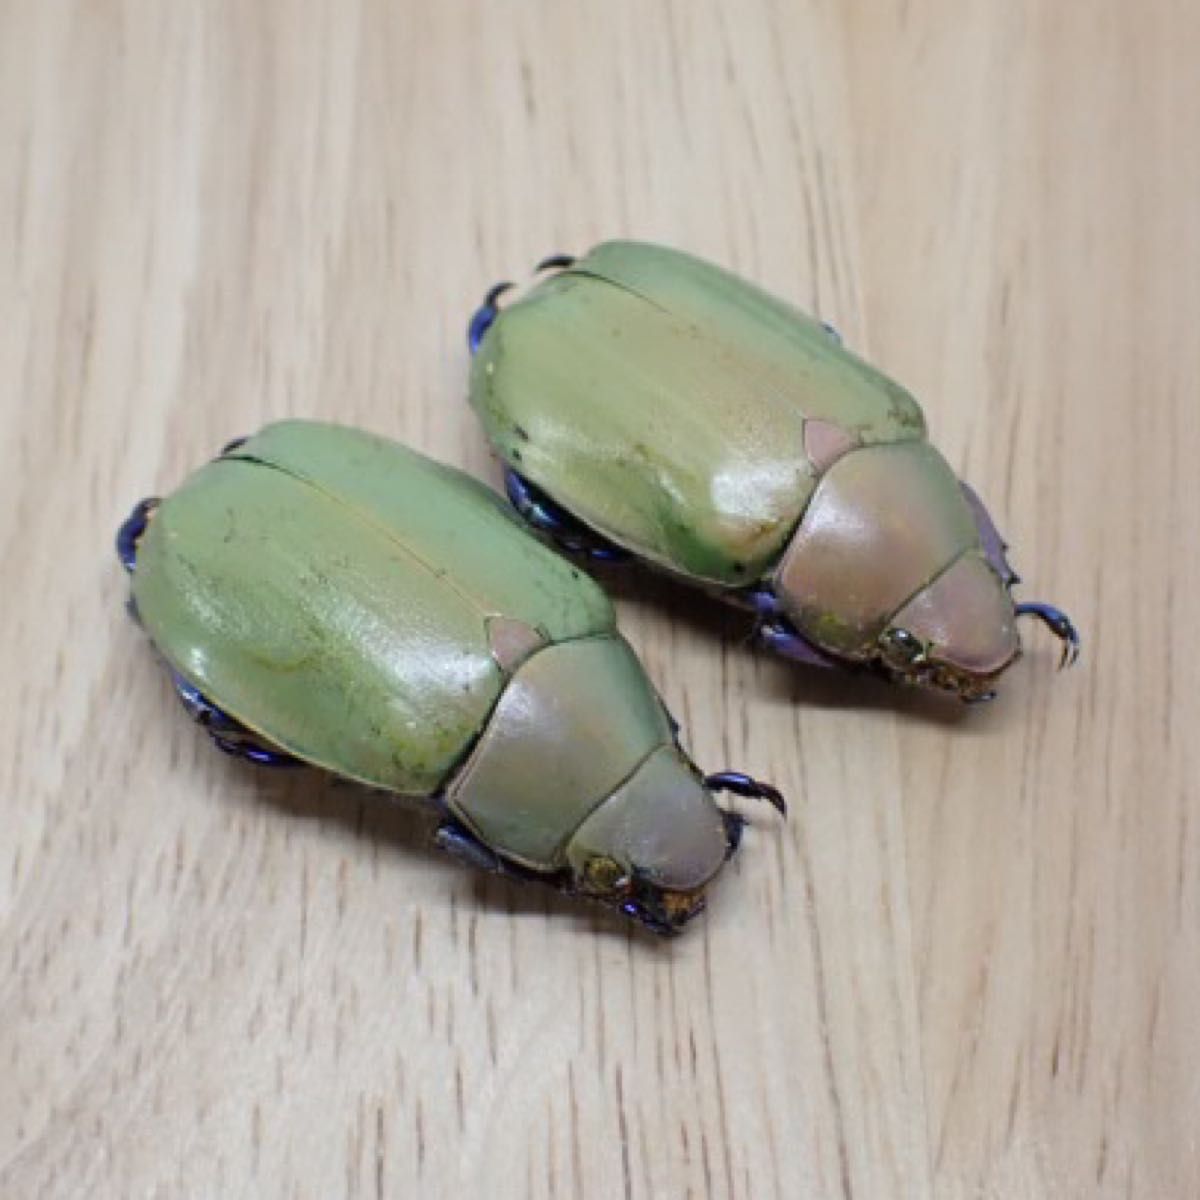 [昆虫標本] Chrysina erubescens no.169メキシコの宝石コガネムシ